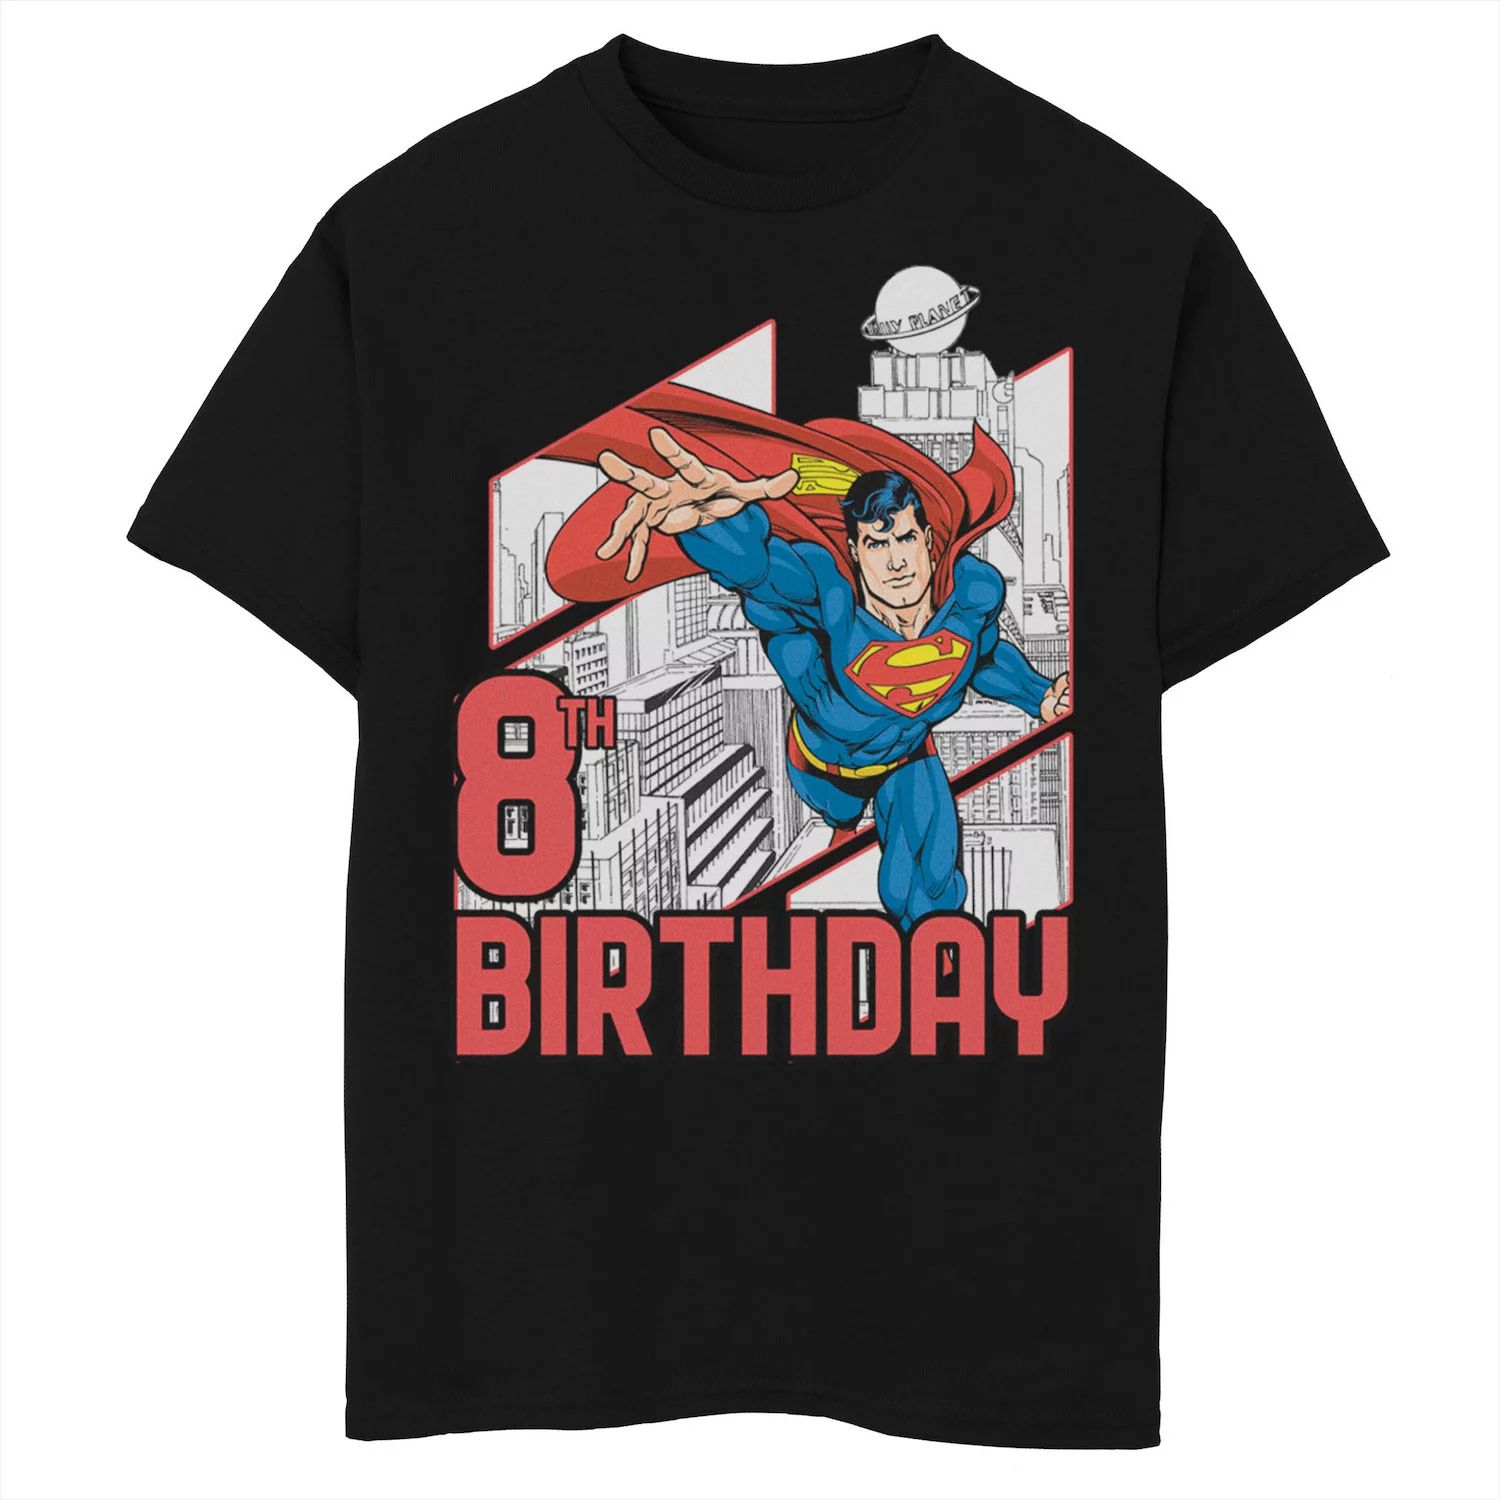 Футболка с рисунком Супермена на 8-й день рождения для мальчиков 8–20 лет из комиксов DC Comics Licensed Character, черный футболка на 6 й день рождения чудо женщина для мальчиков 8–20 лет из комиксов dc comics licensed character